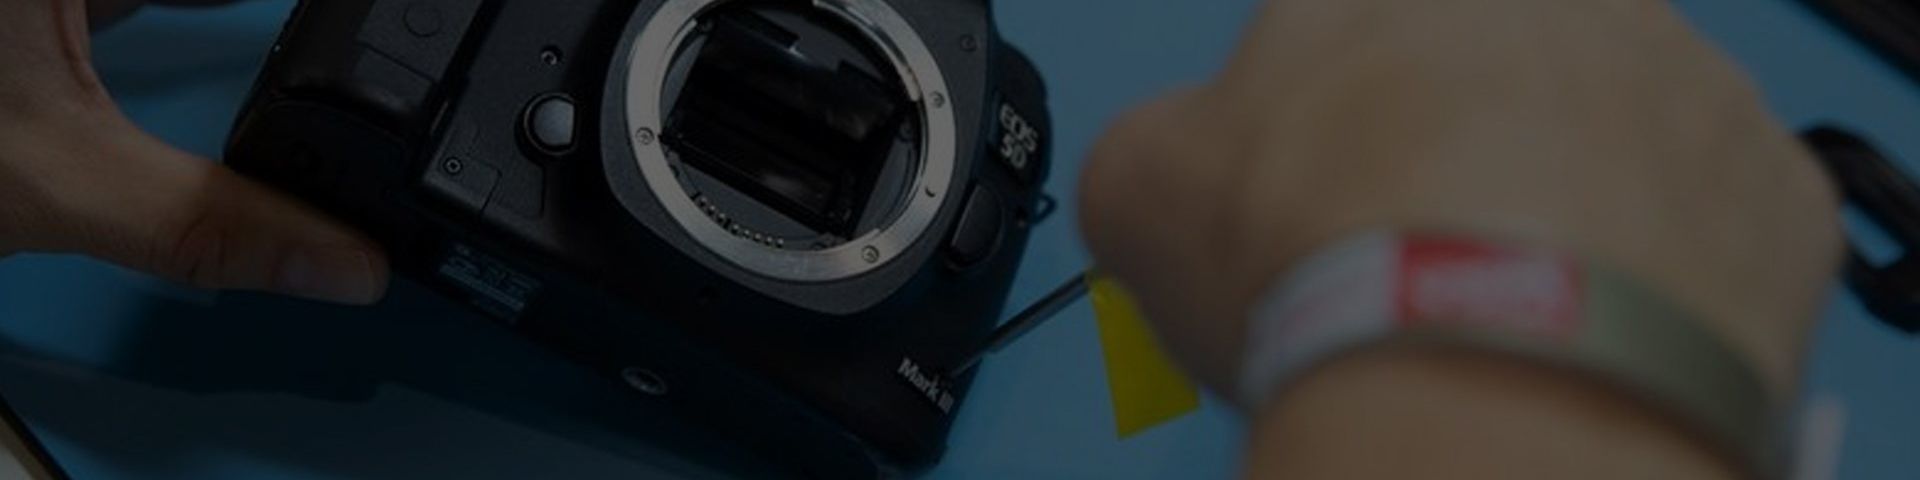 Interchangeable Lens Cameras - EOS R50 (Body) - Canon South & Southeast Asia